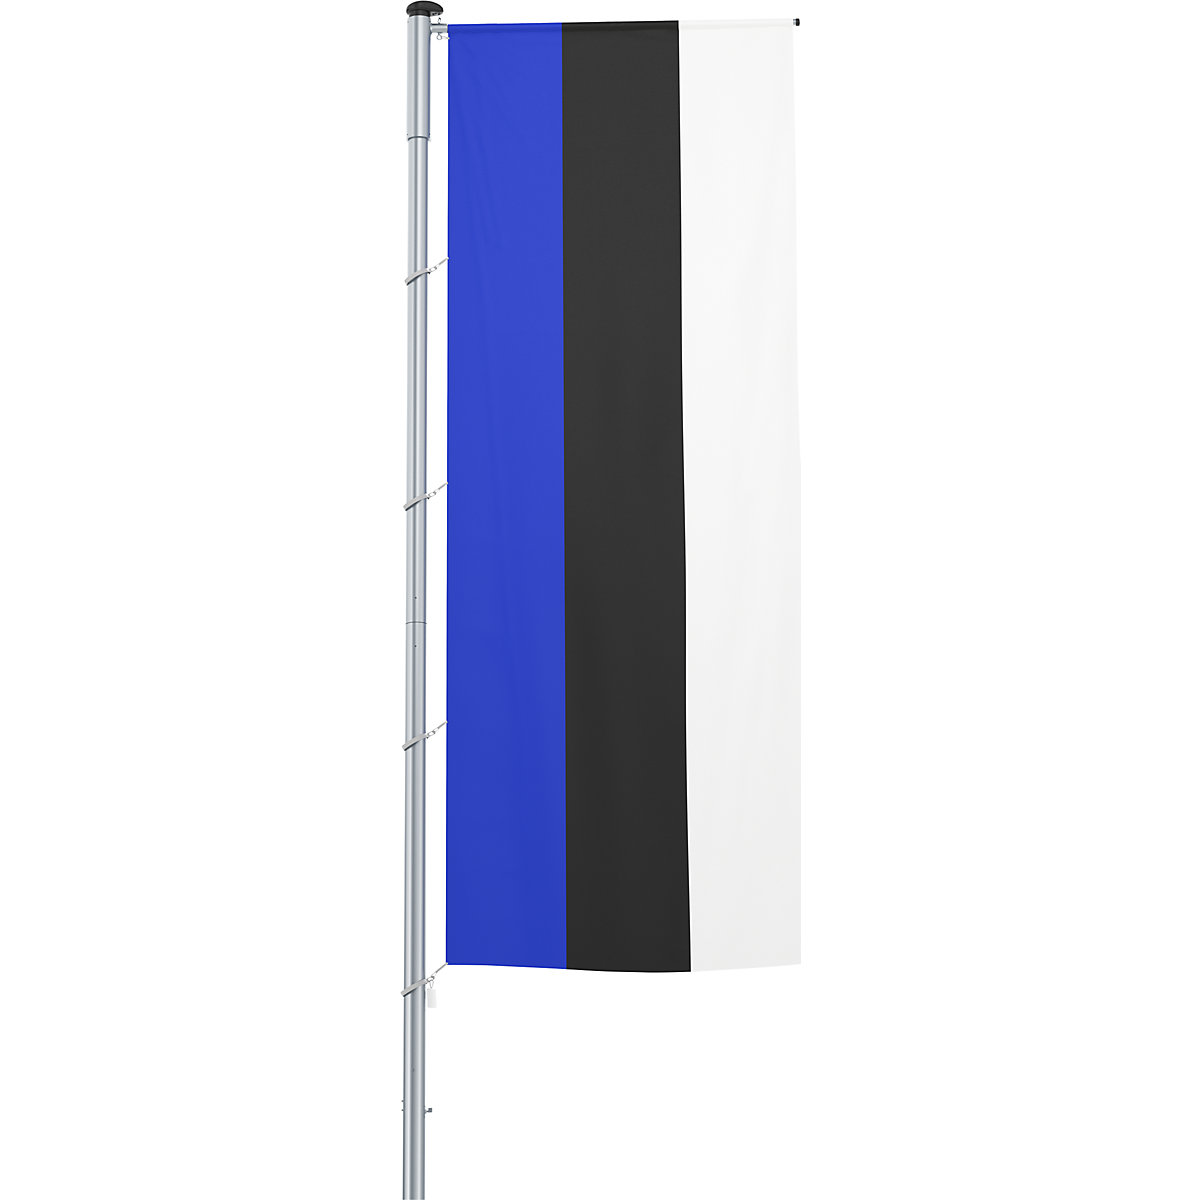 Vlajka na pozdĺžne upevnenie na stožiar/národná vlajka – Mannus, formát 1,2 x 3 m, Estónsko-31